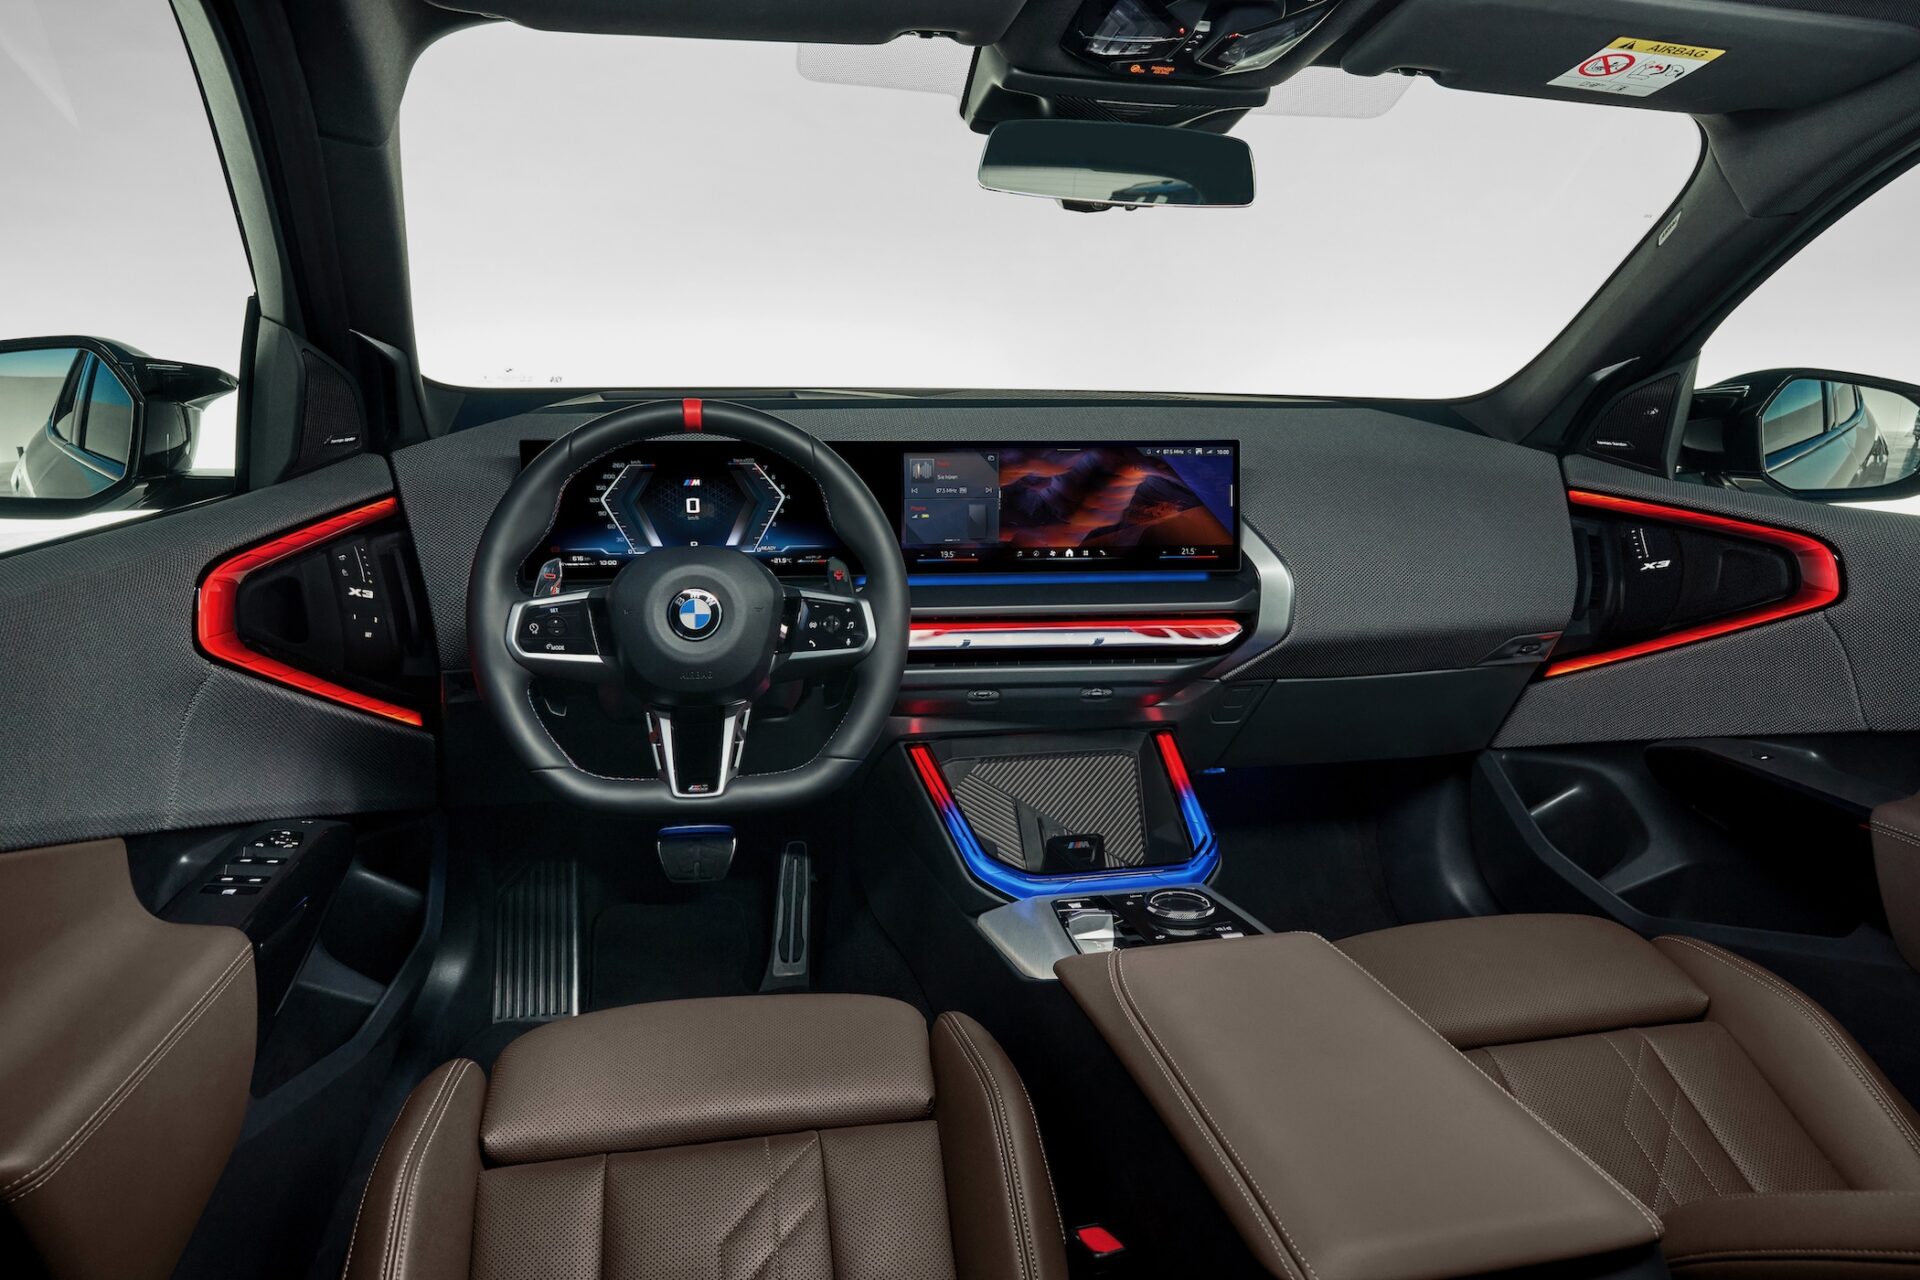 BMW-interiör med en modern design och röda accenter på instrumentbrädan